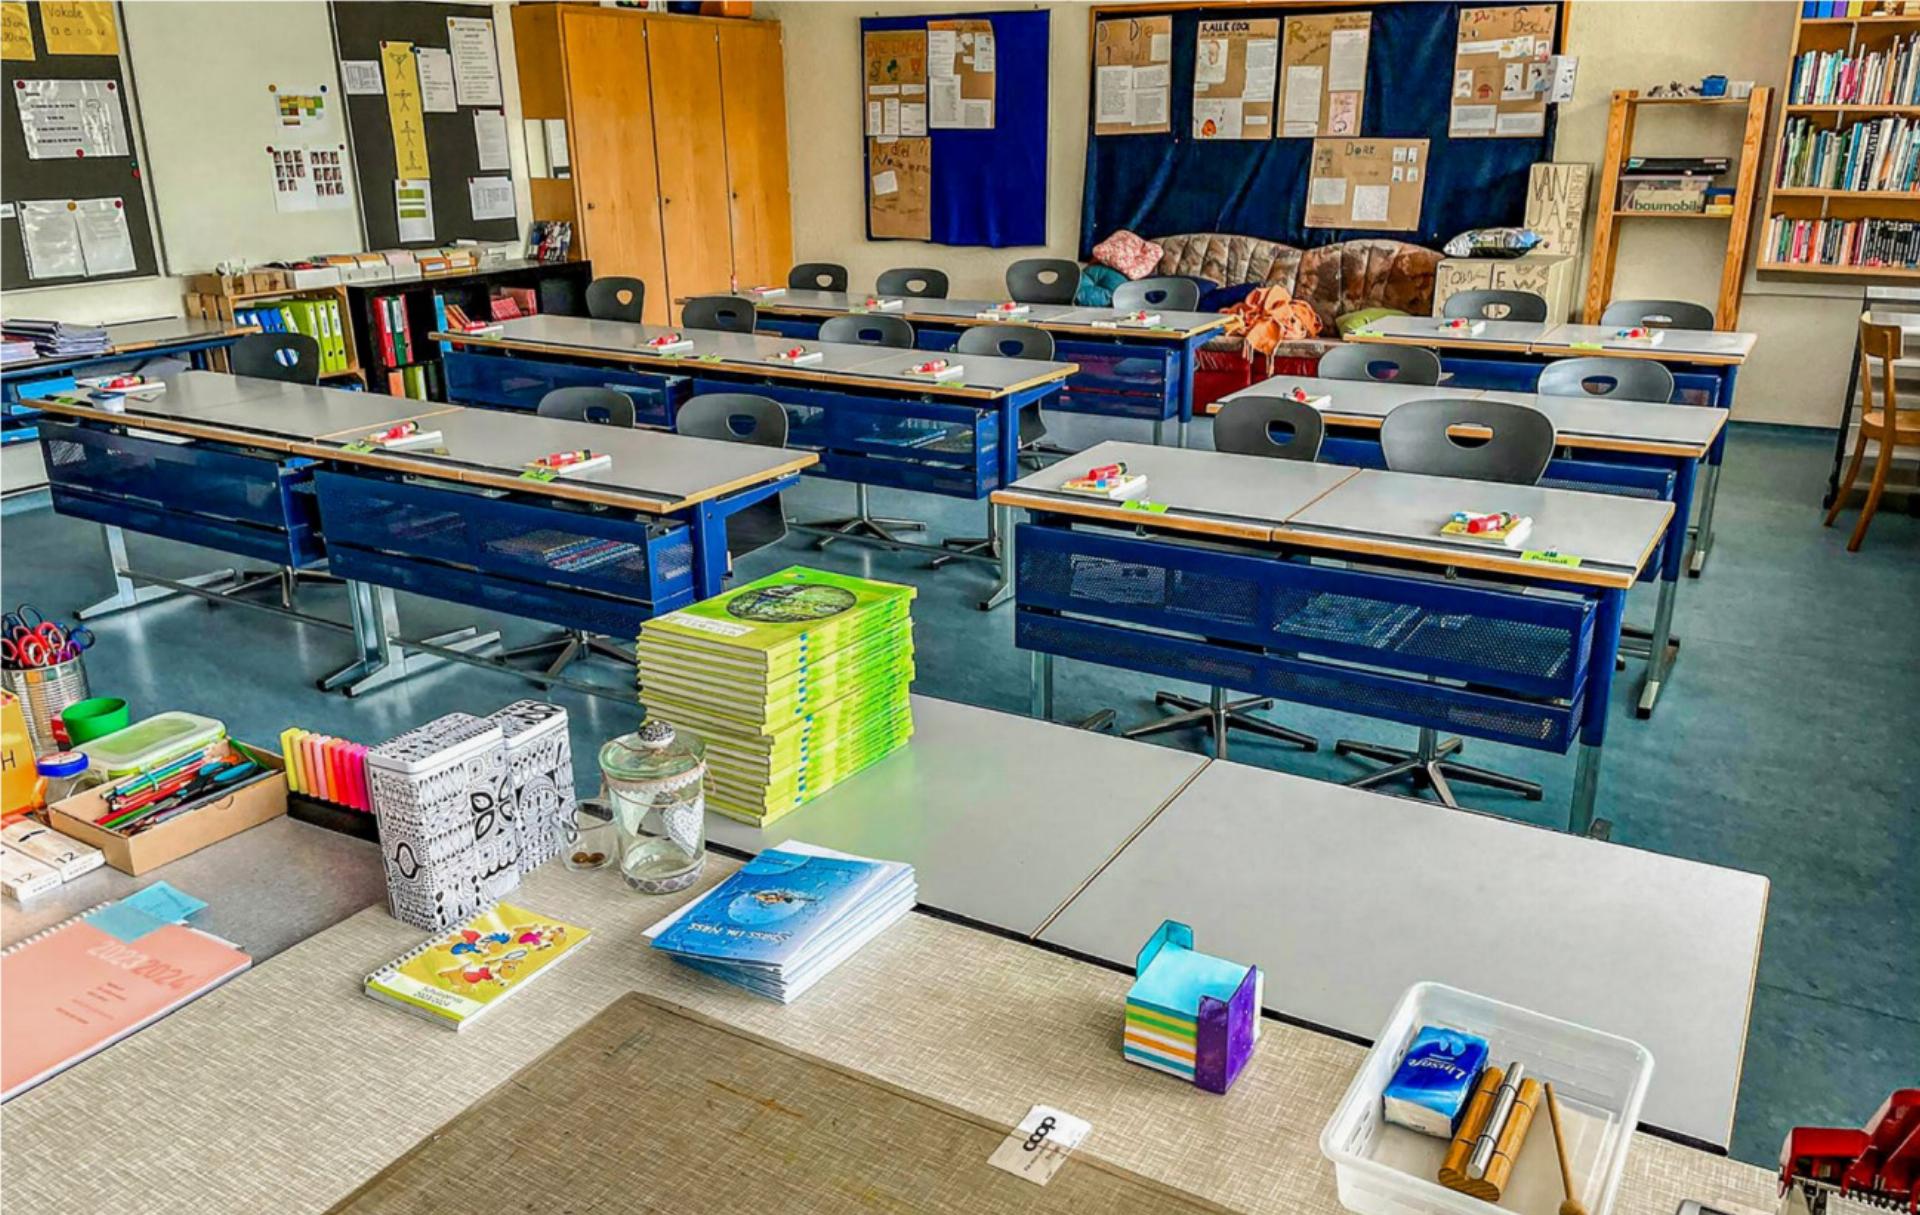 Alles ist bereit für den ersten Schultag in diesem Frutiger Klassenzimmer – auch die Lehrerstellen sind alle besetzt. BILD: ZVG